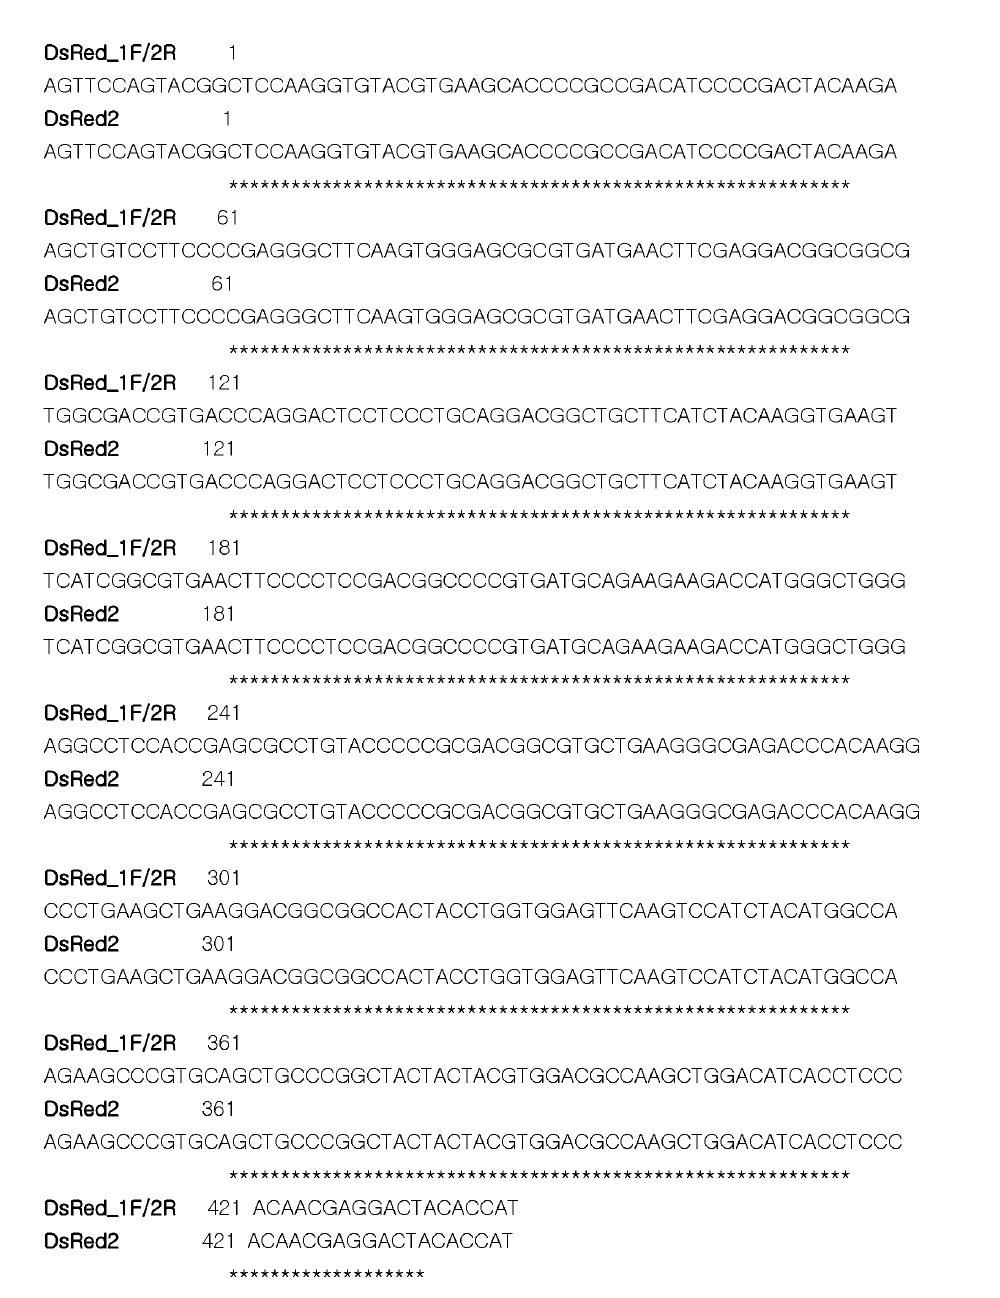 형광 zebrafish genomic DNA를 주형으로 DsRed IF primer와 2R primer로 cloning한 후 염기서열 분석 결과.